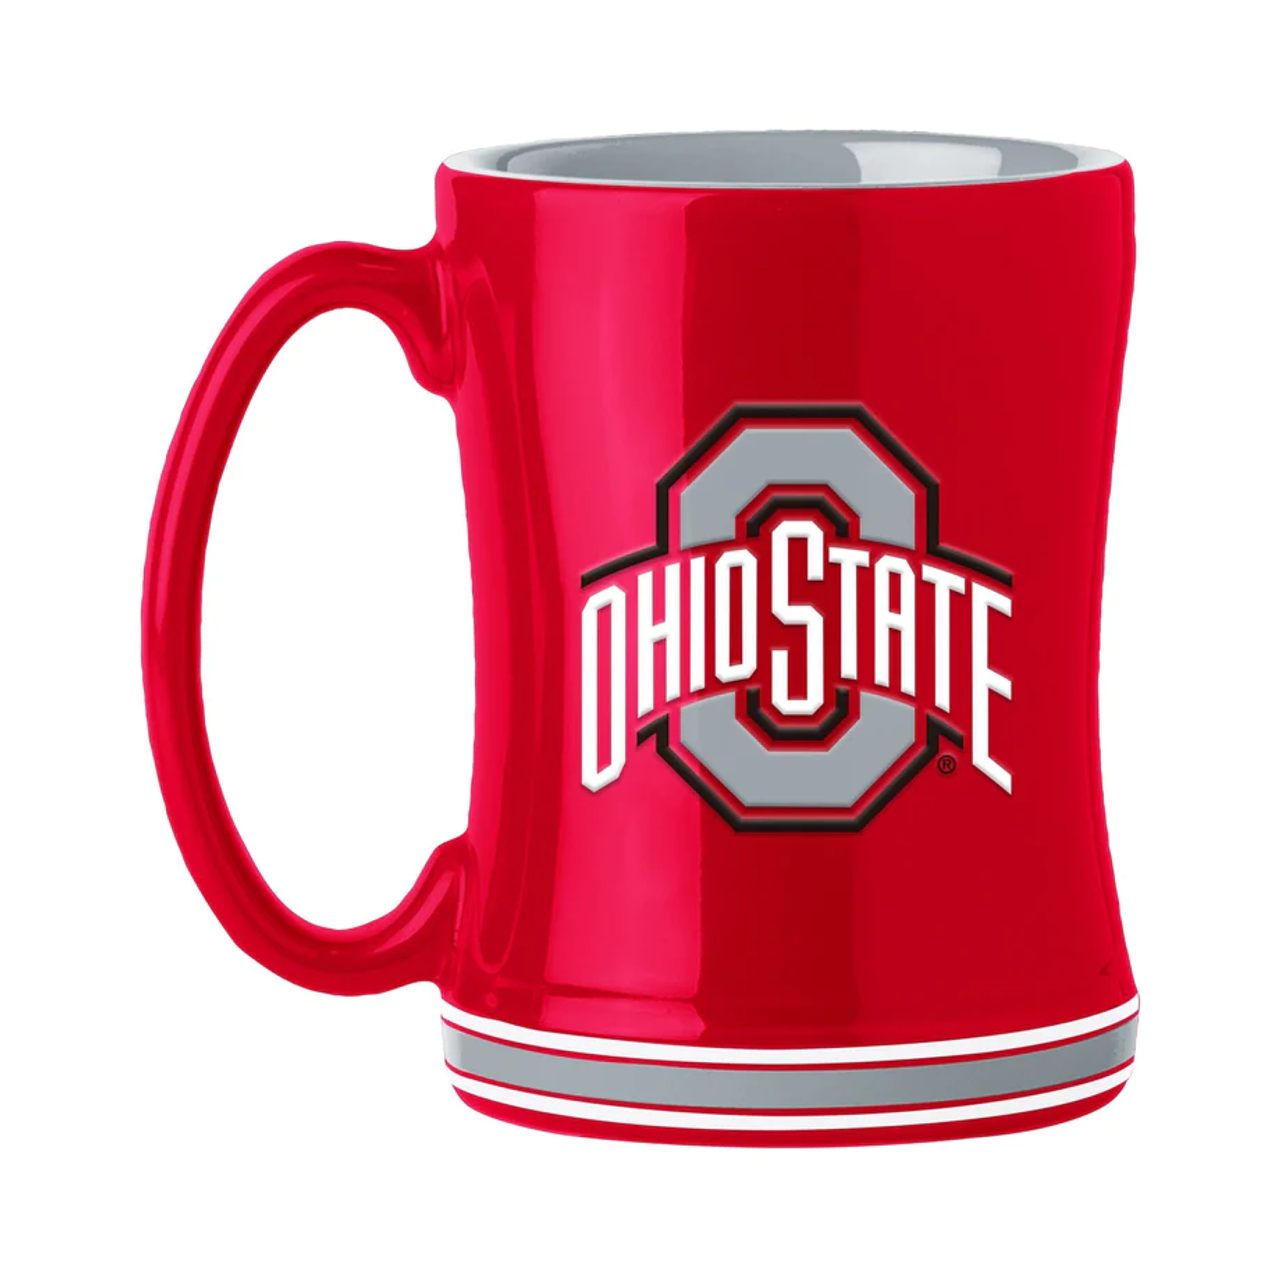 Ohio State 14 Oz Ceramic Mug Your Choice of Font Color 